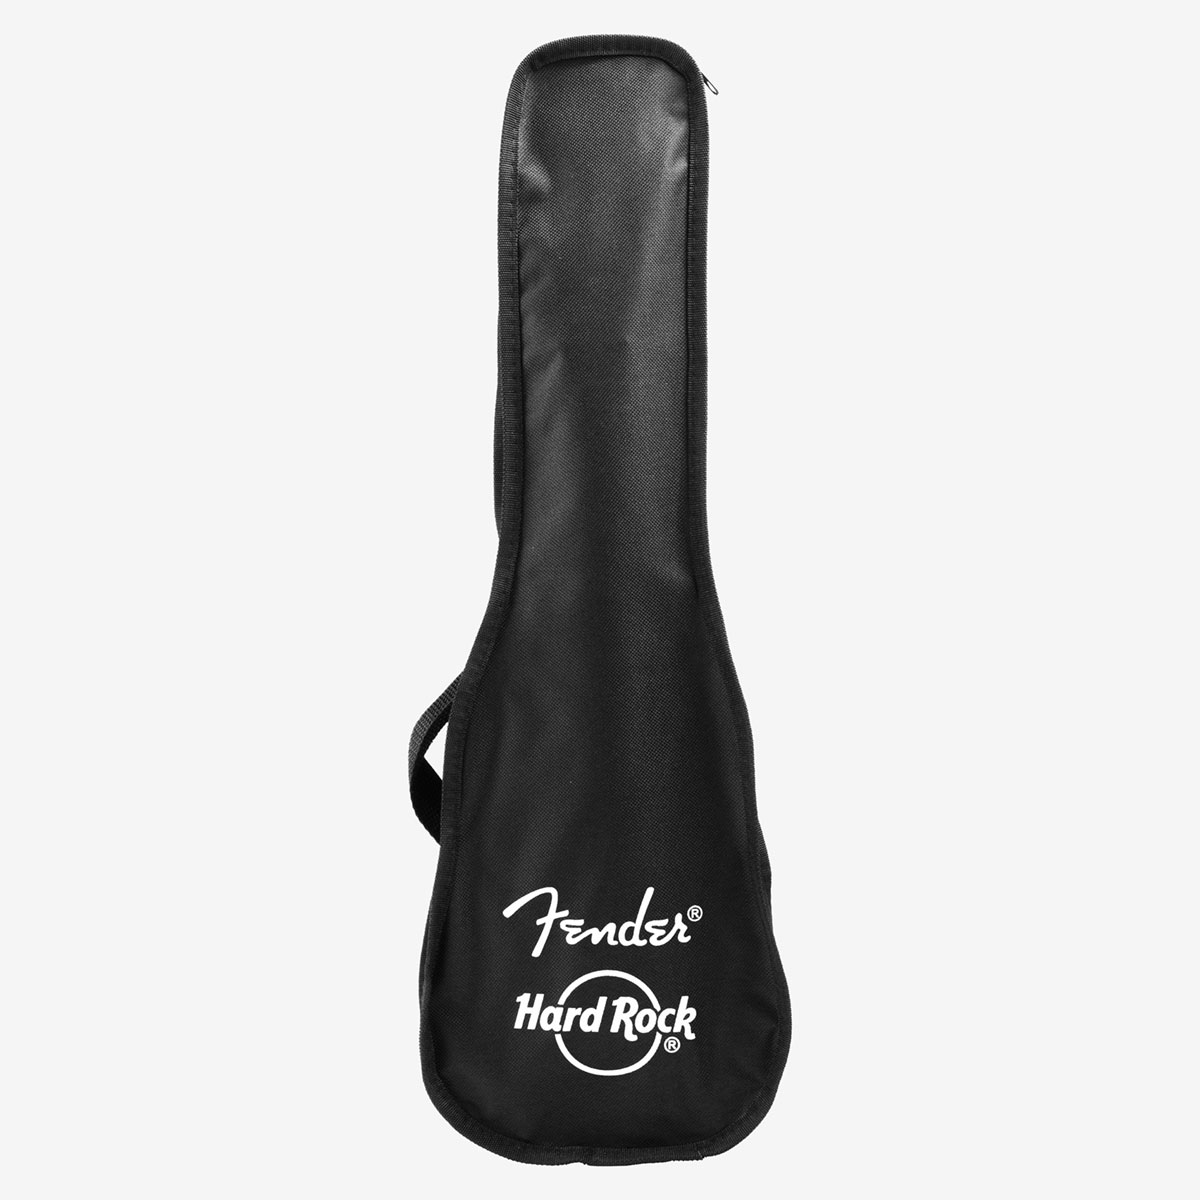 Fender x Hard Rock Venice Ukulele in Satin Black with Bag image number 6